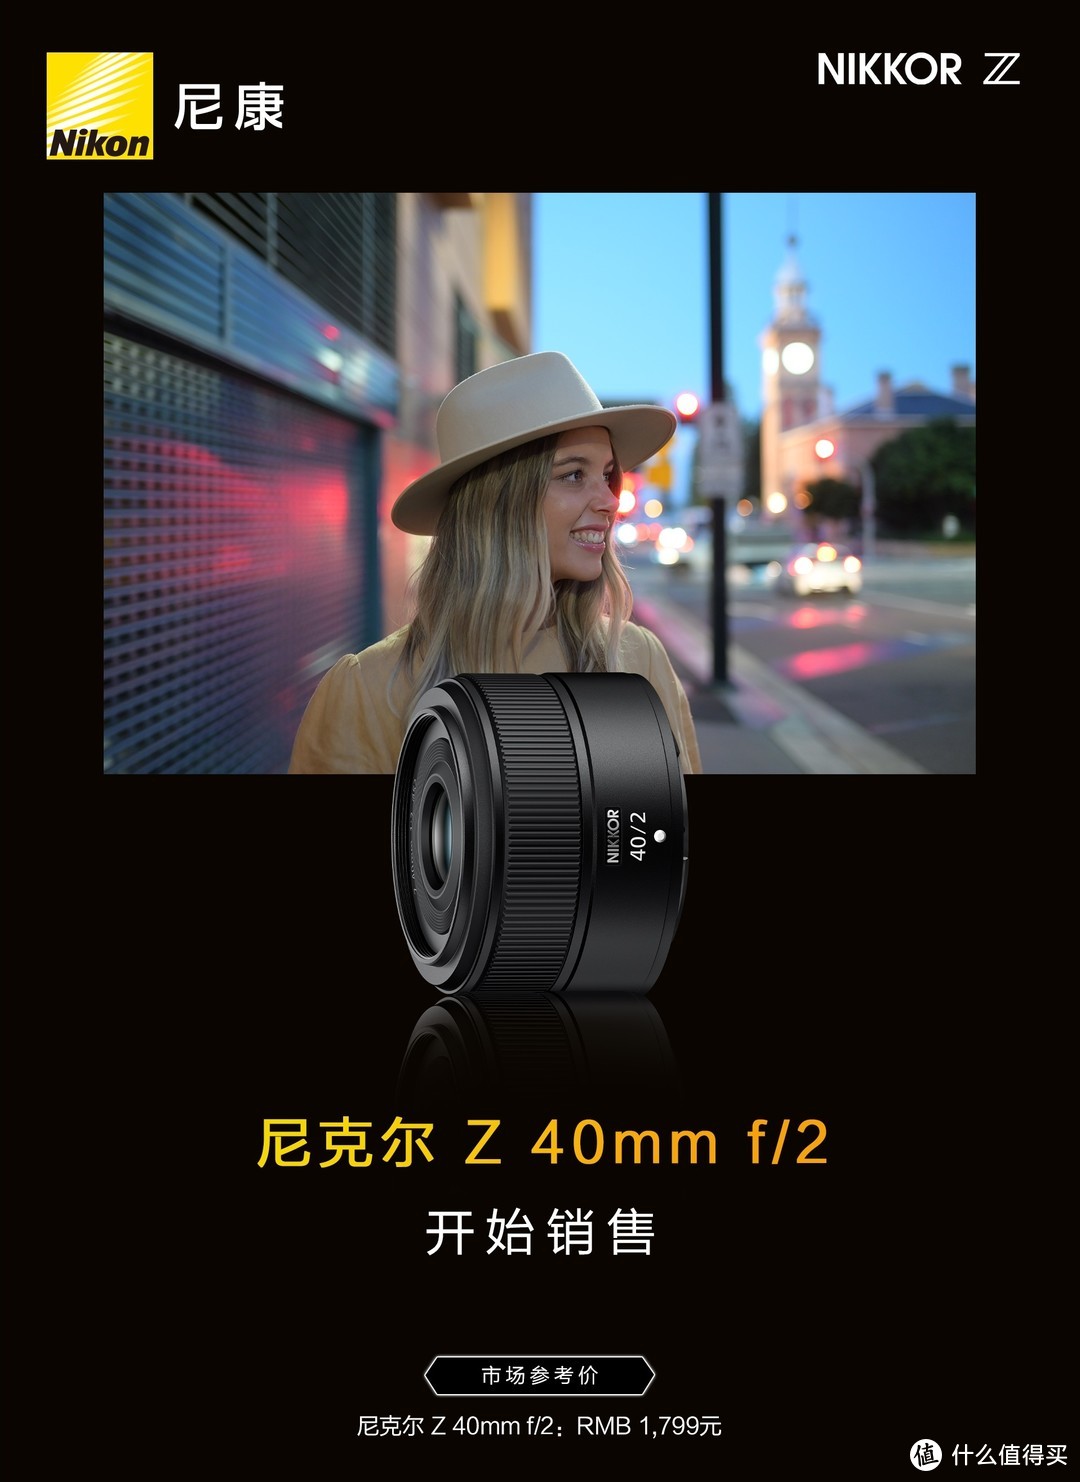 小巧便携开启摄影创作新体验 尼克尔 Z 40mm f/2镜头9月30日开始销售